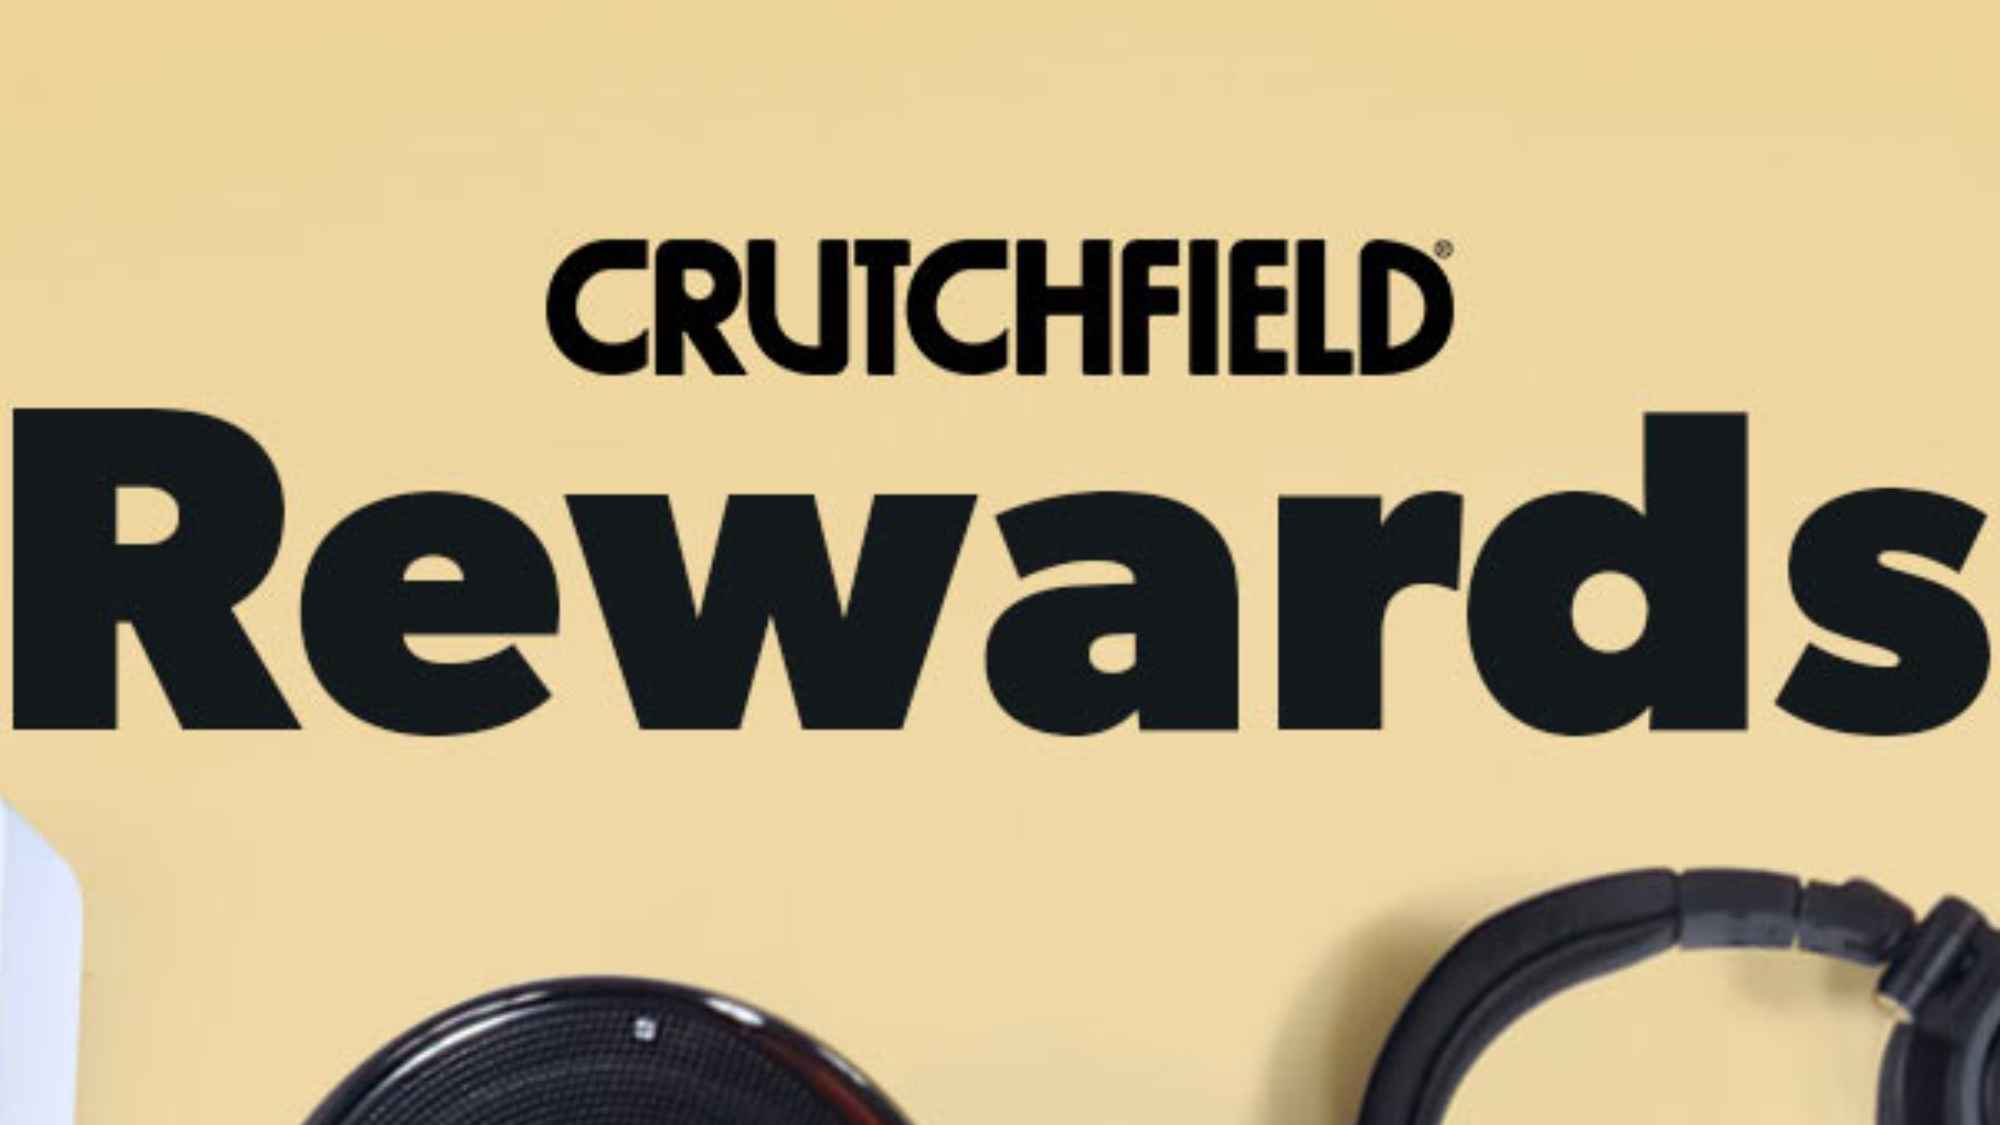 Crutchfield Rewards